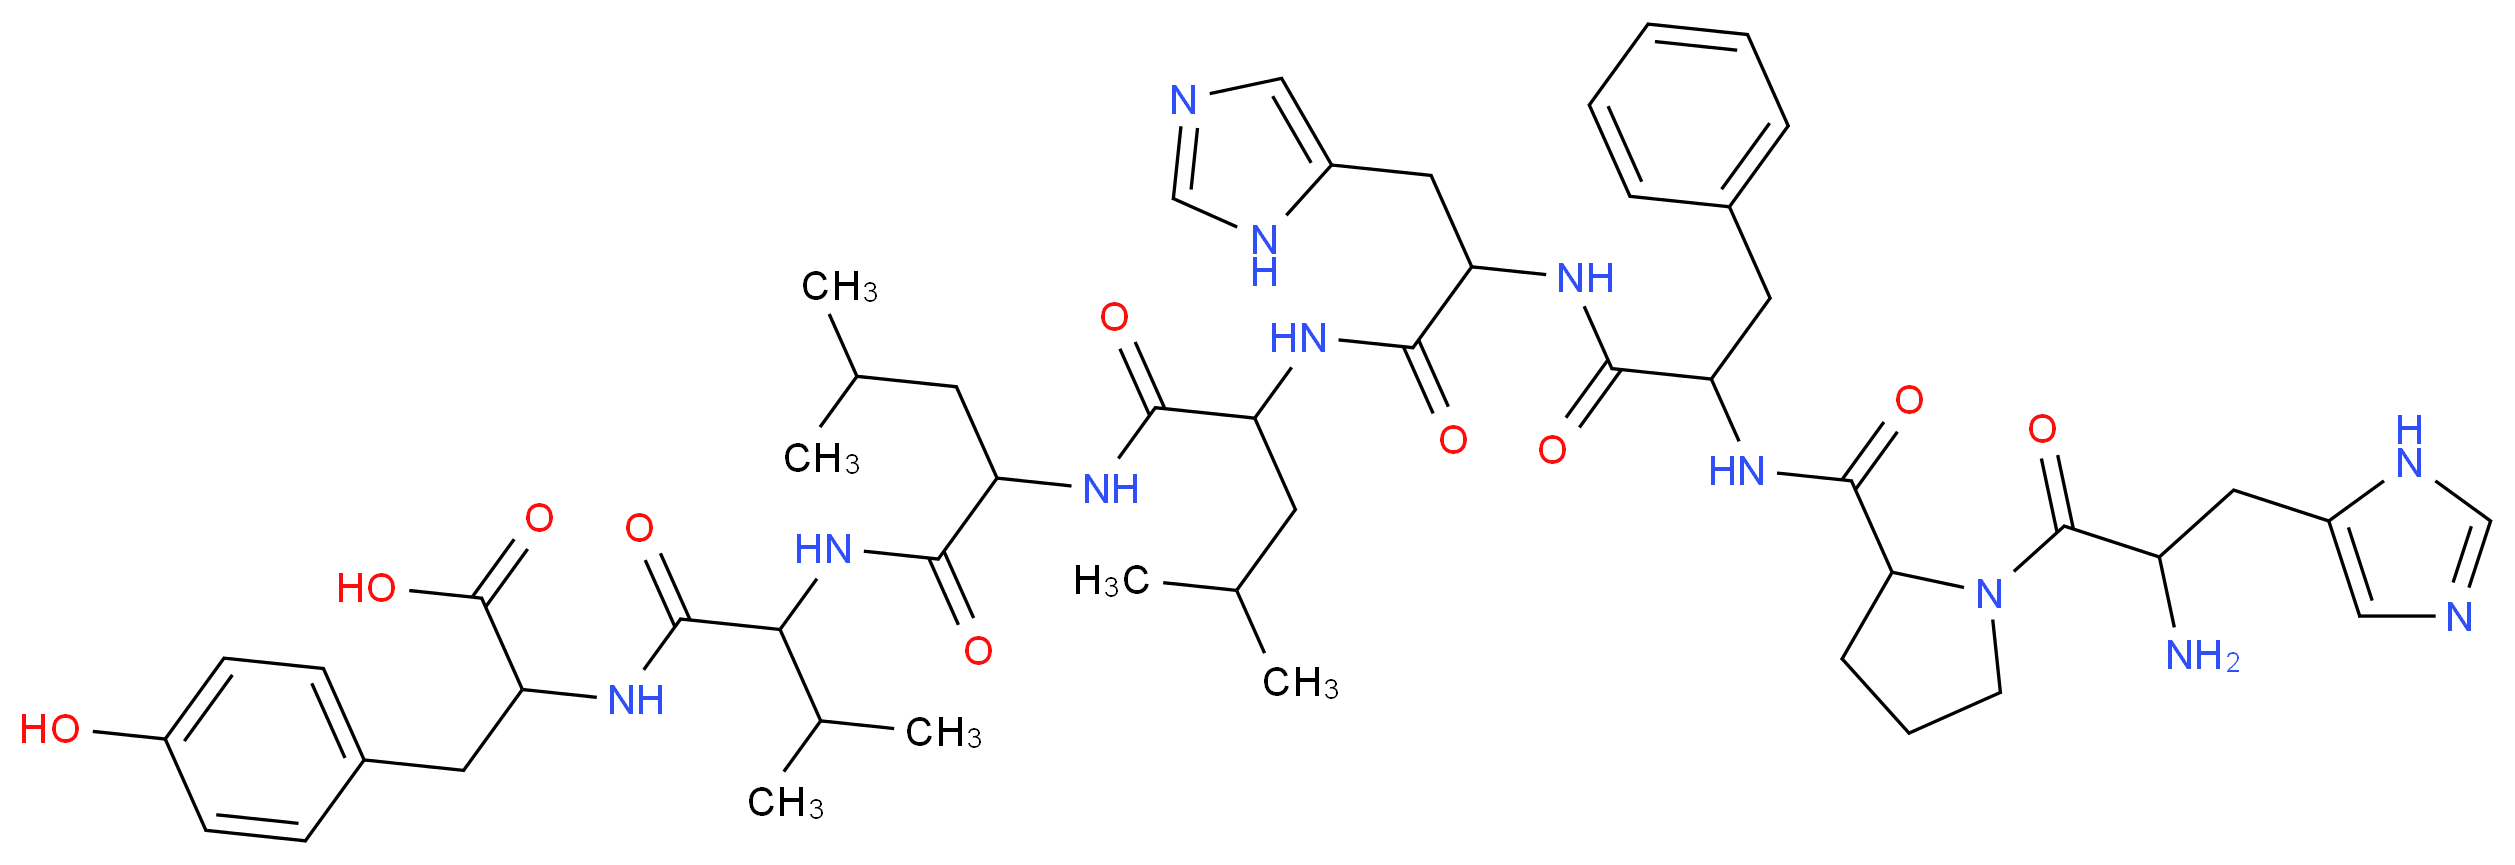 50410-01-0 molecular structure